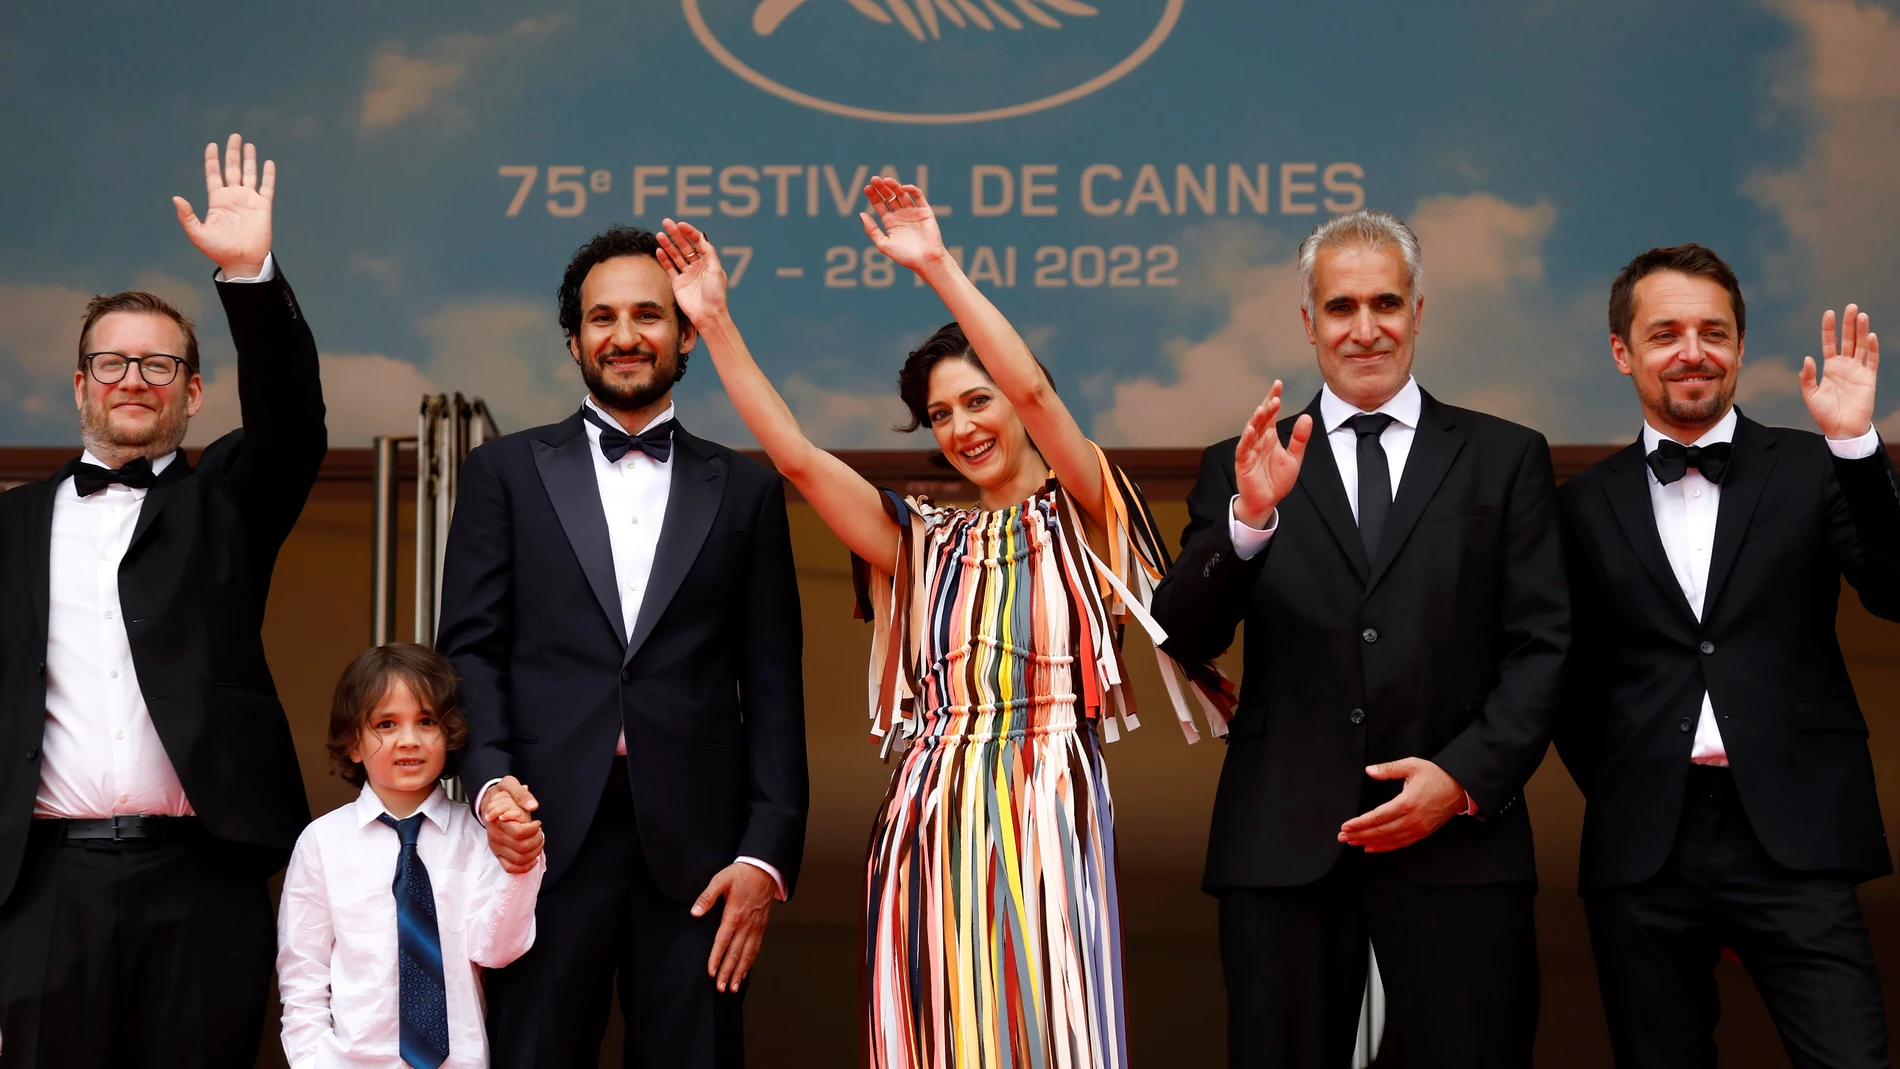 El director iraní Ali Abbasi (tercero por la izda.), junto a su familia y equipo, en la presentación de "Holy Spider" en Cannes